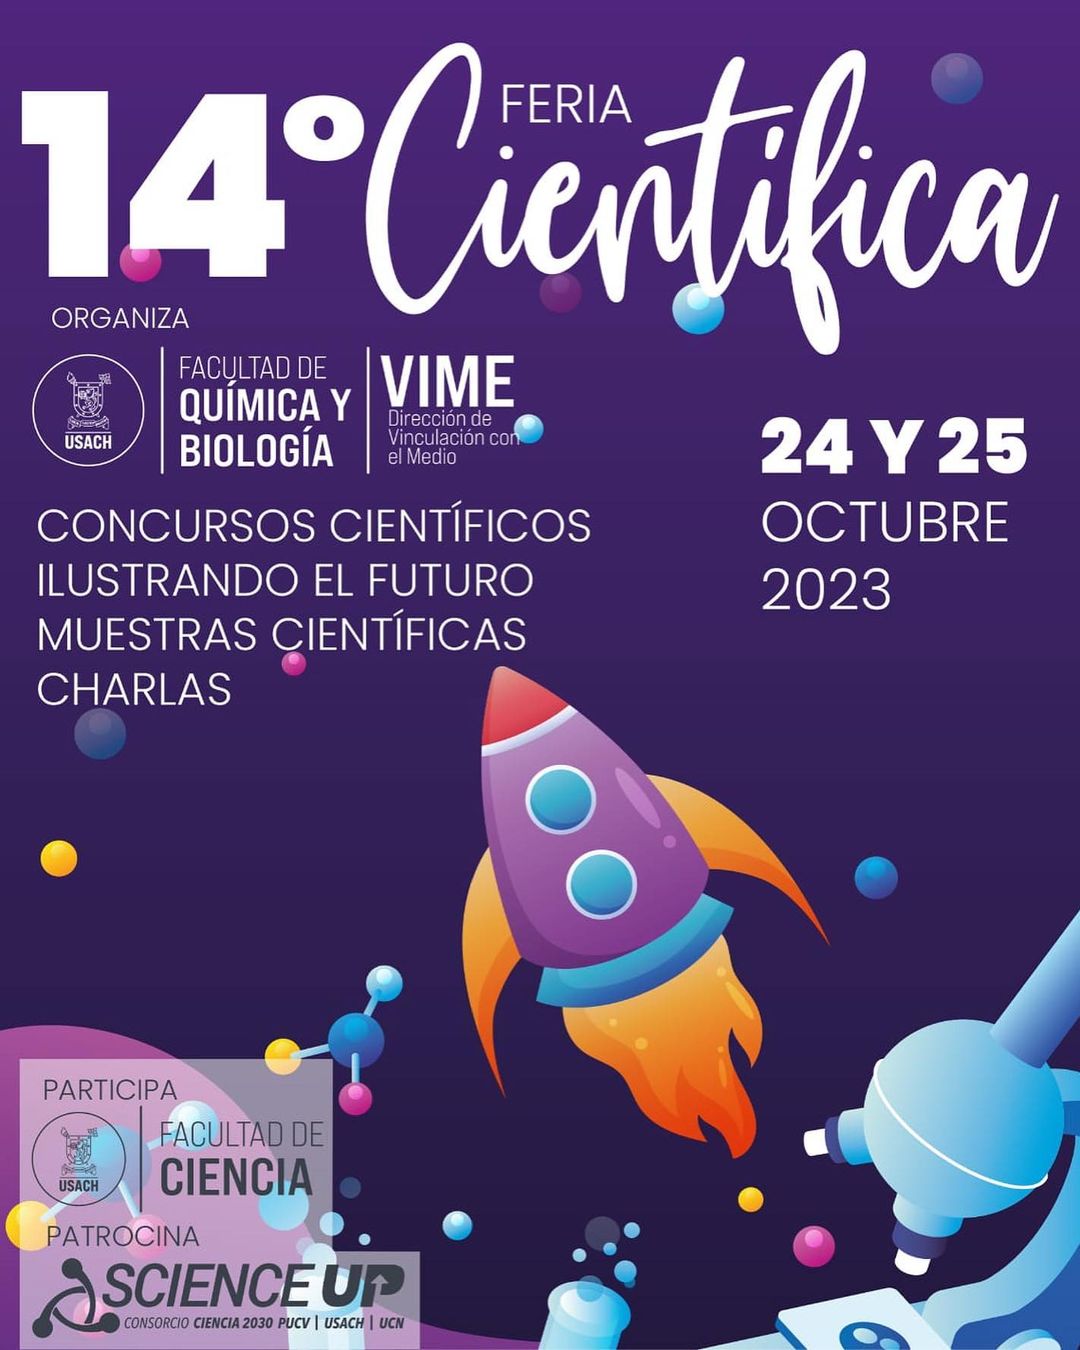 Feria Científica de la F. Química y Biología USACH